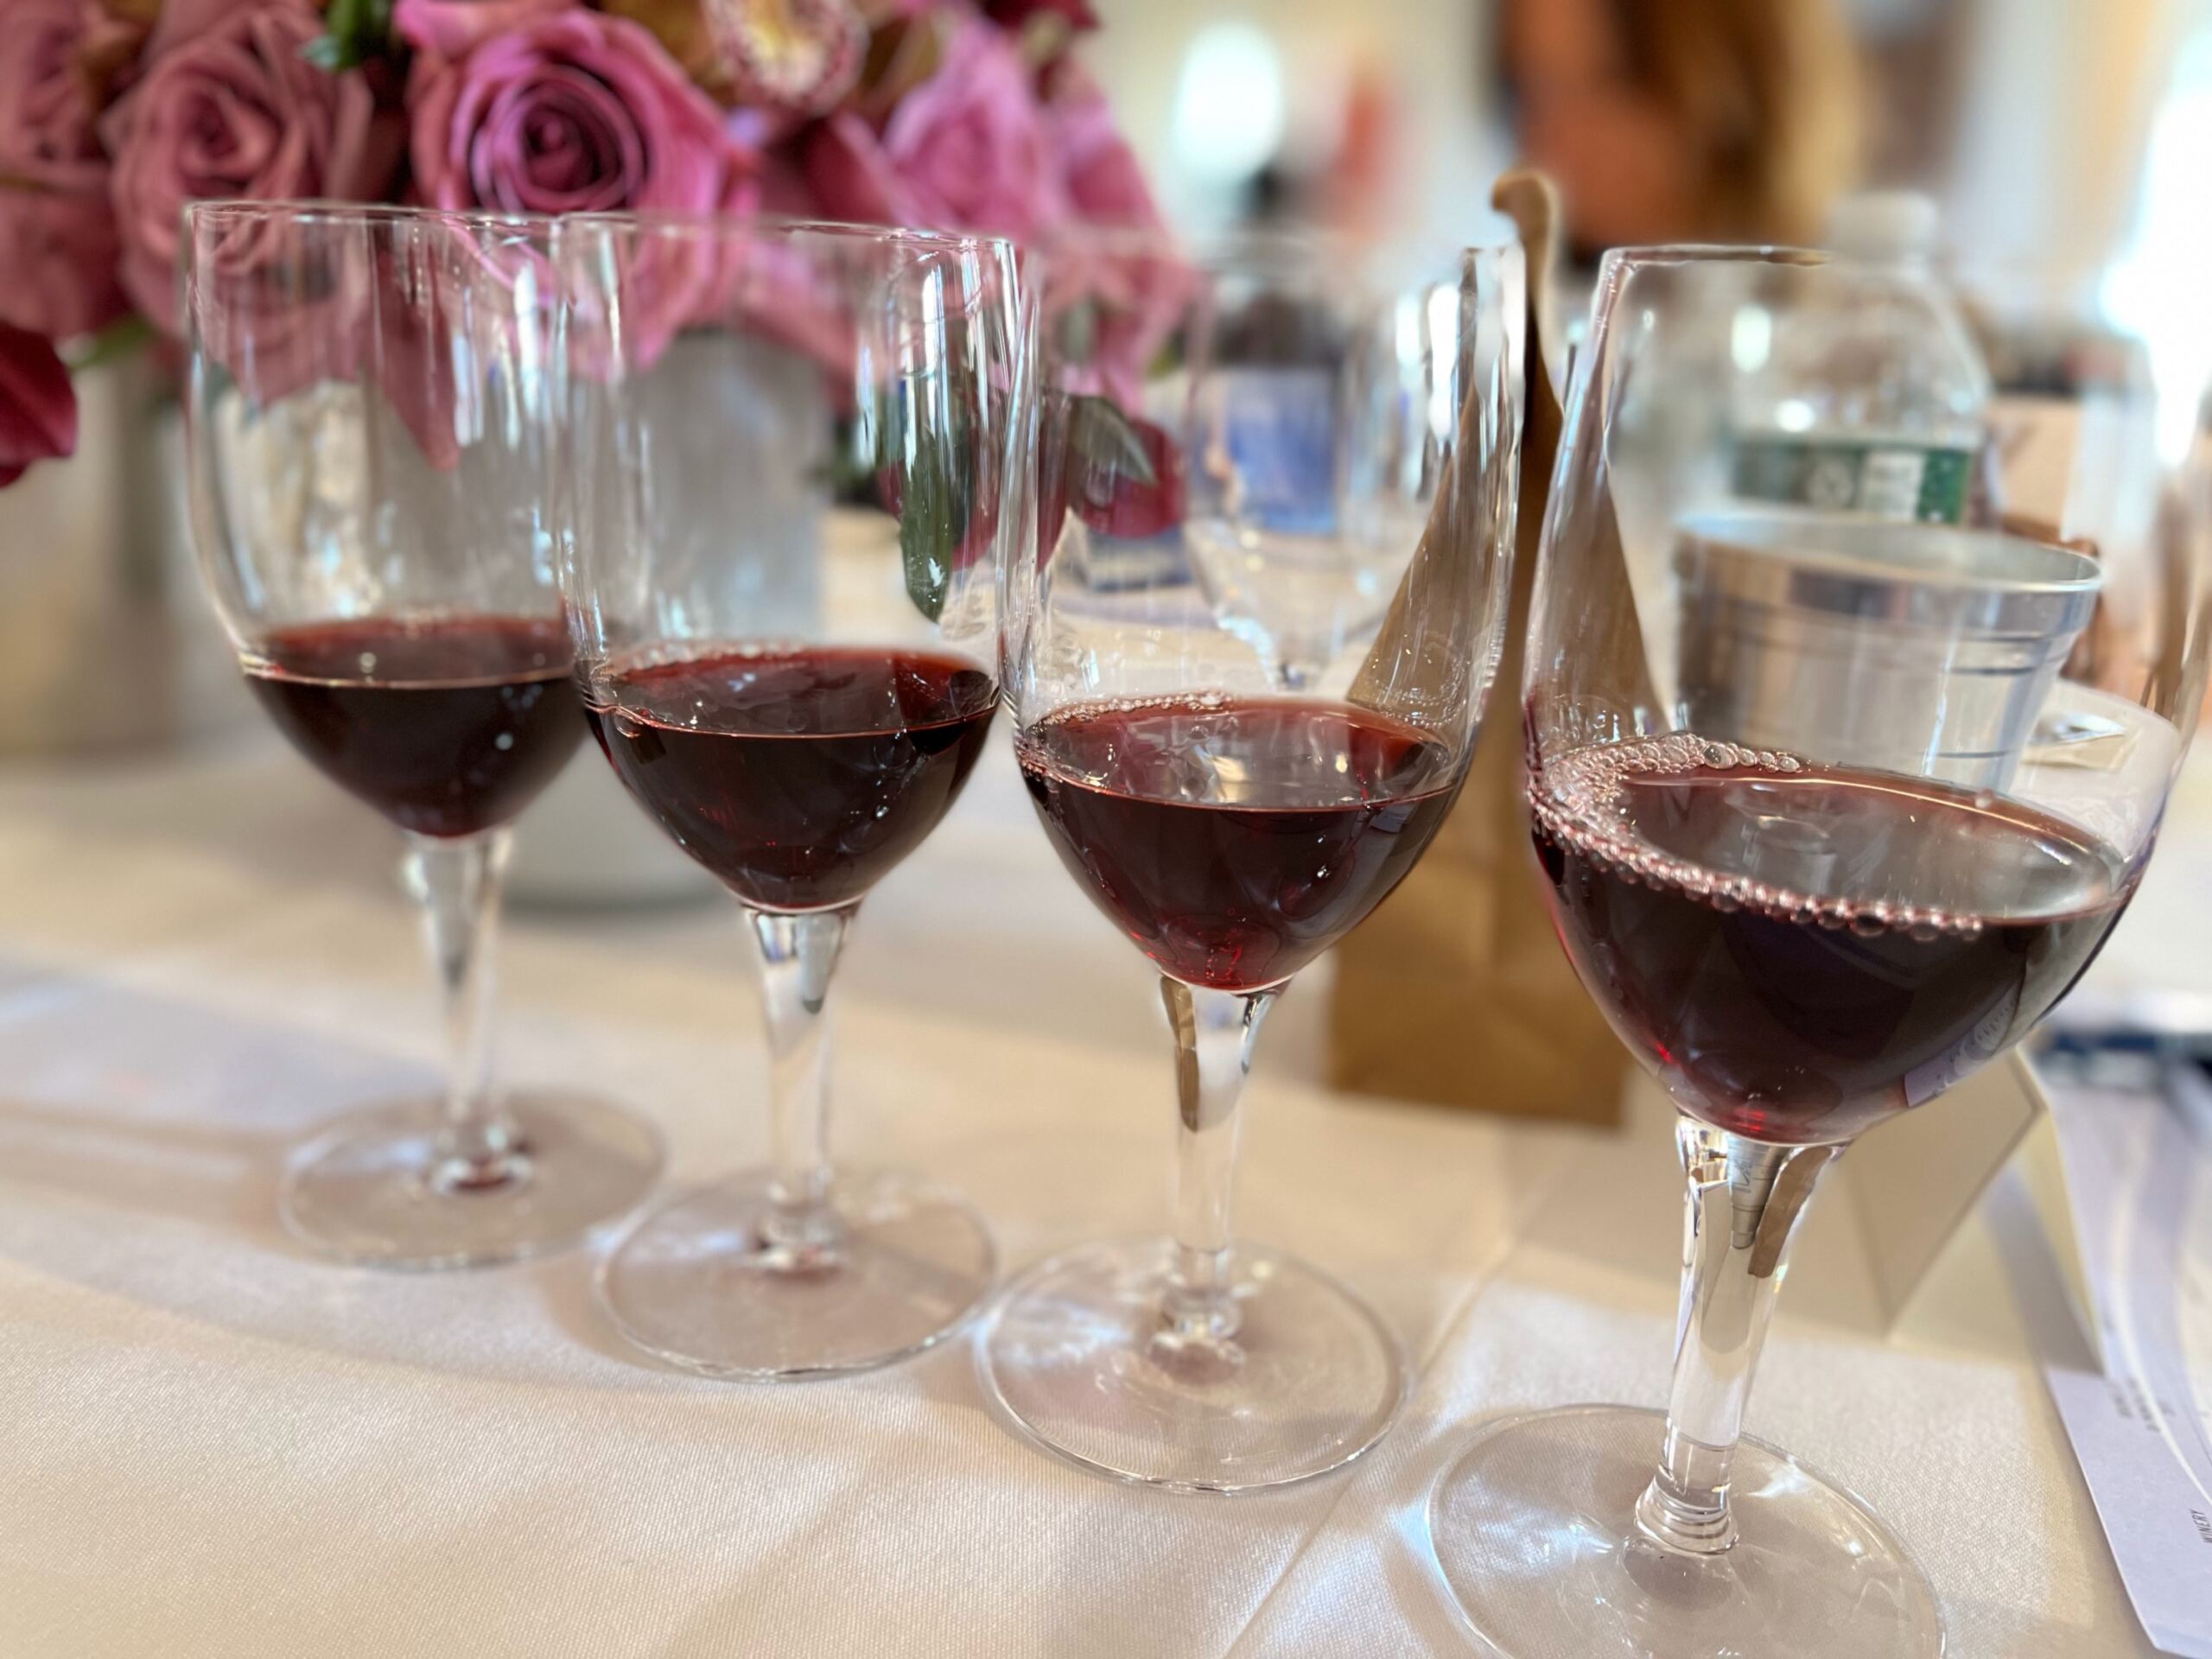 Benvenuto Wines in the glass